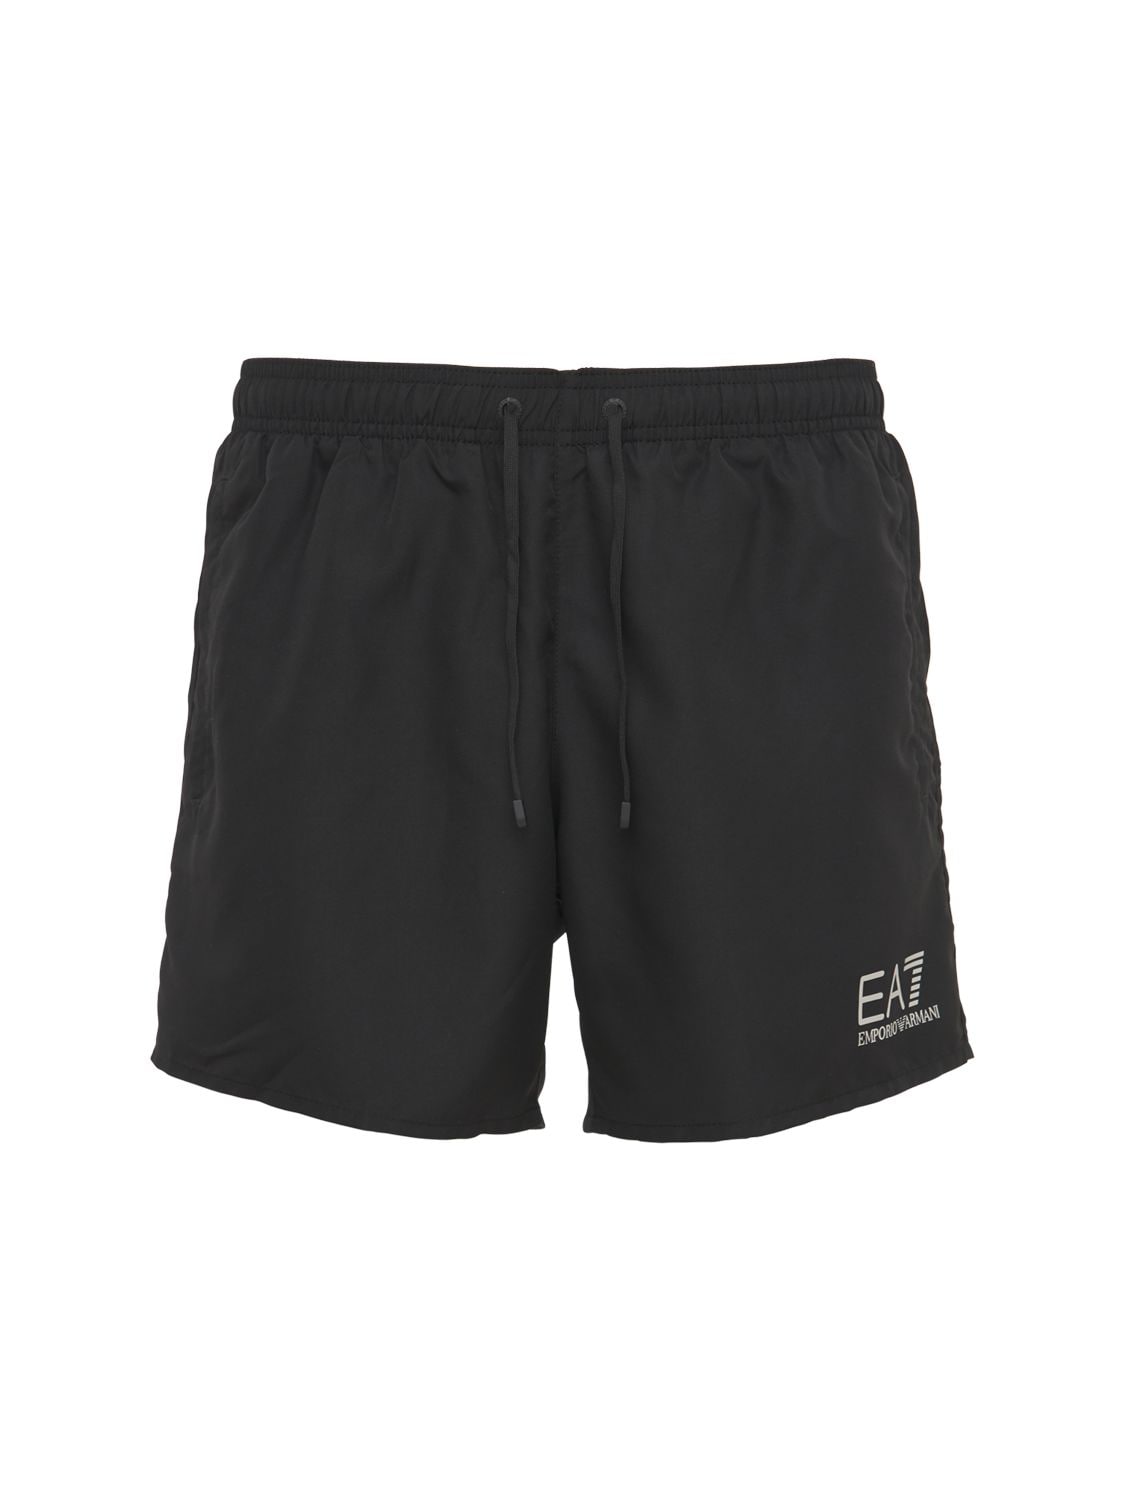 Ea7 Logo印花泳裤 In Black